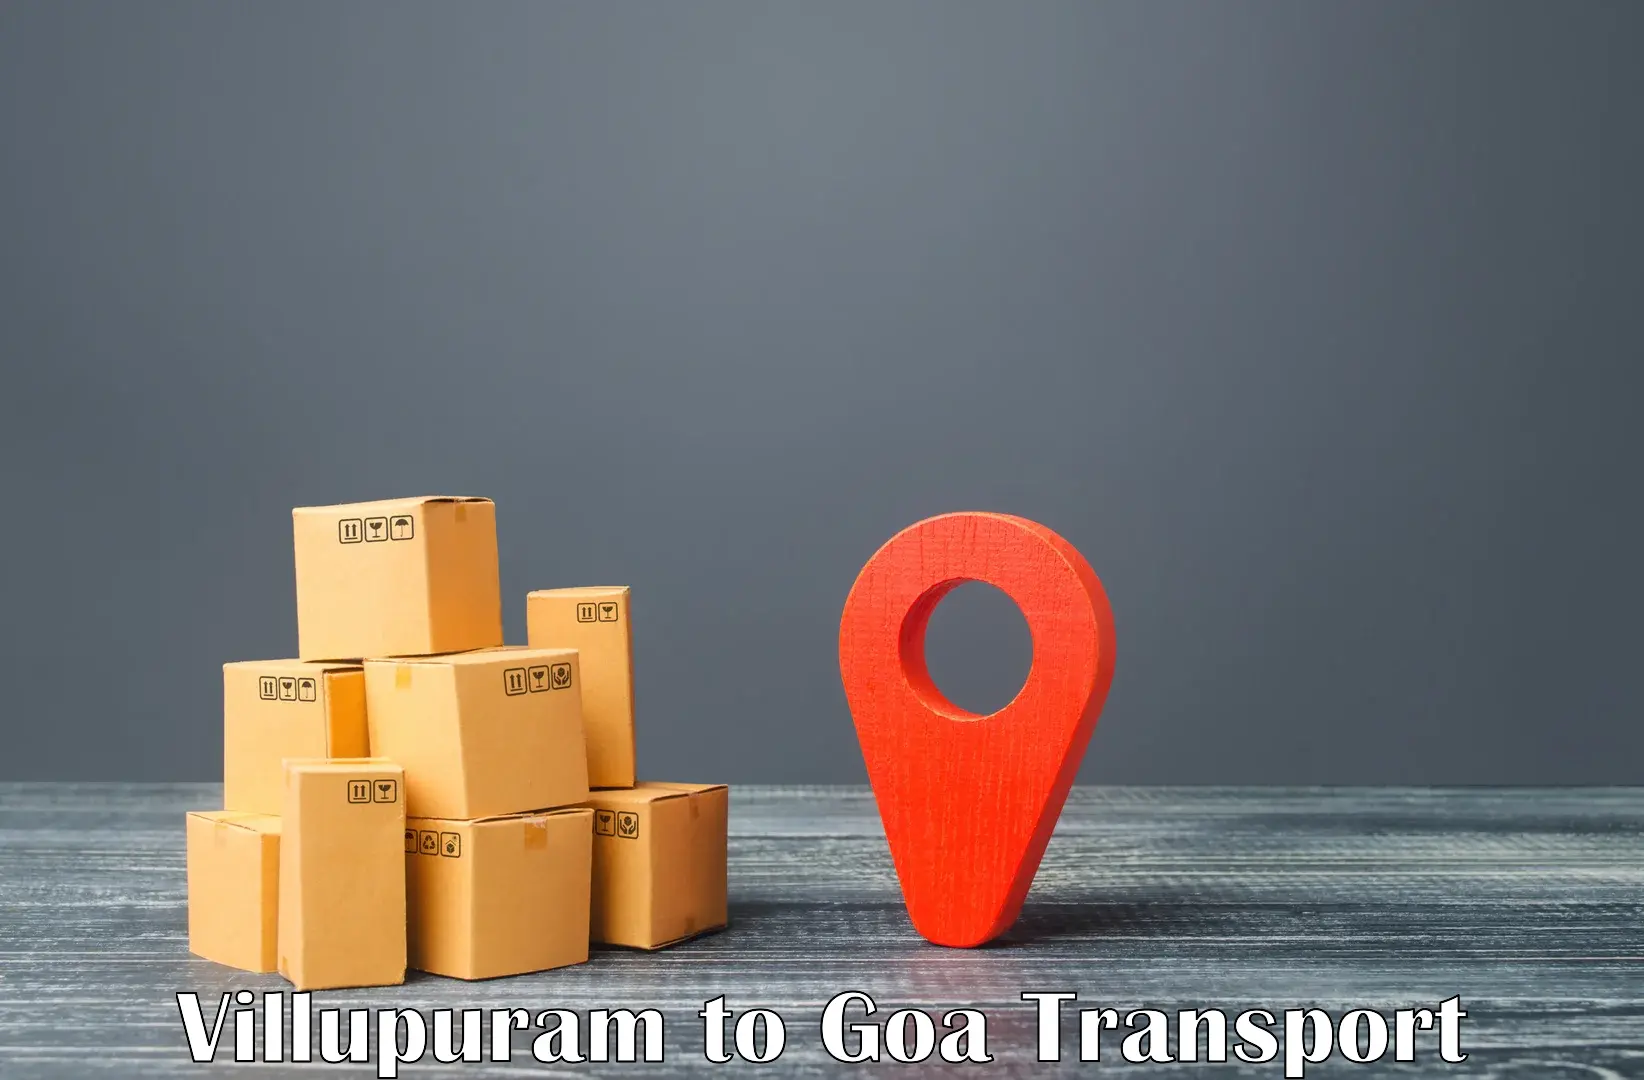 Delivery service Villupuram to Mormugao Port